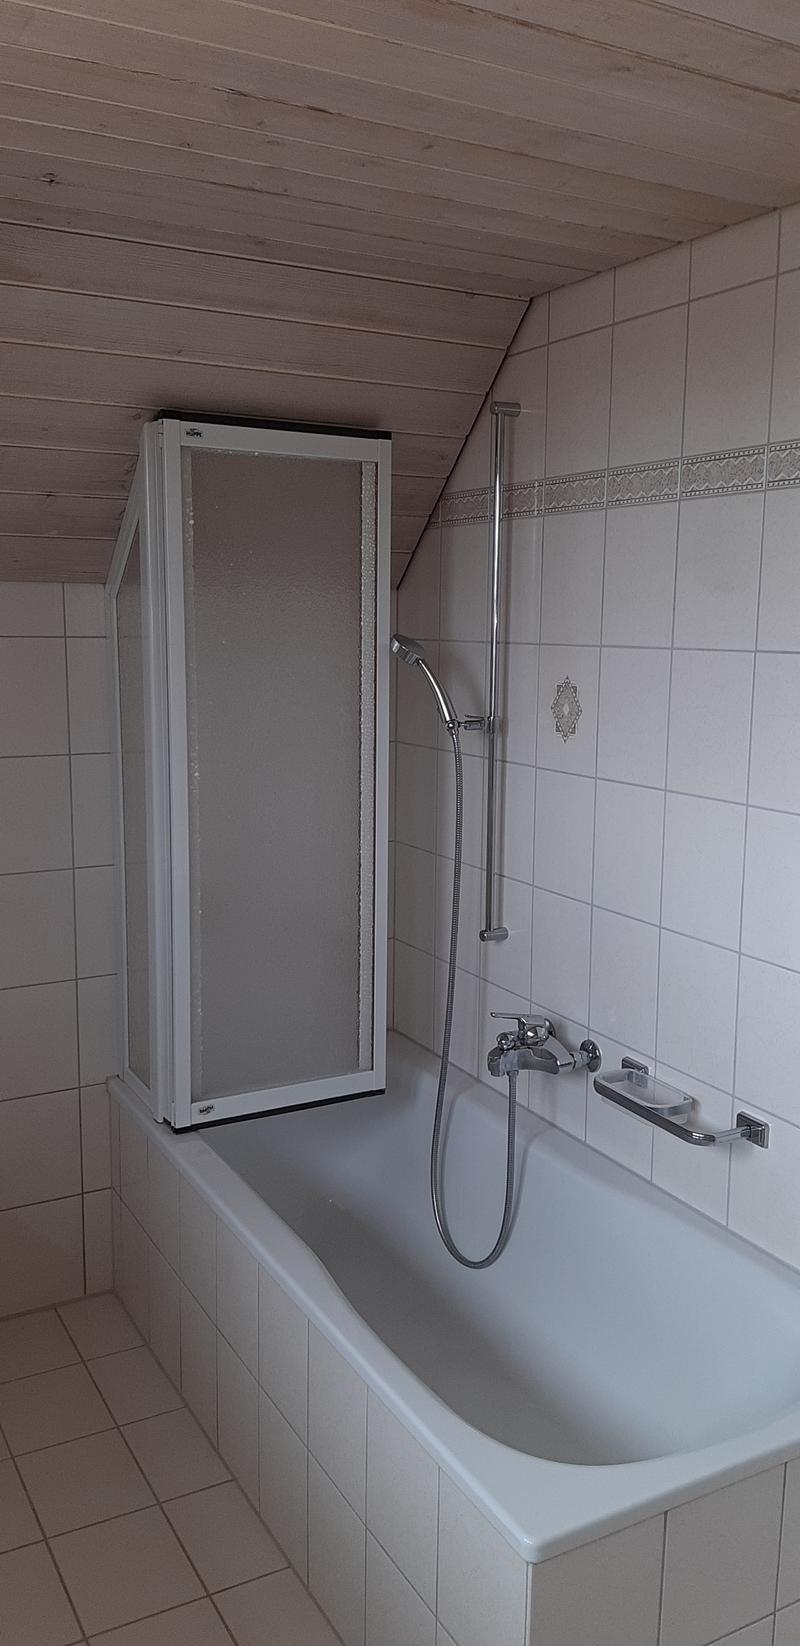 3 1/2 Zimmer Maisonette Wohnung in Wangen b. Olten (unmöbliert) (2)